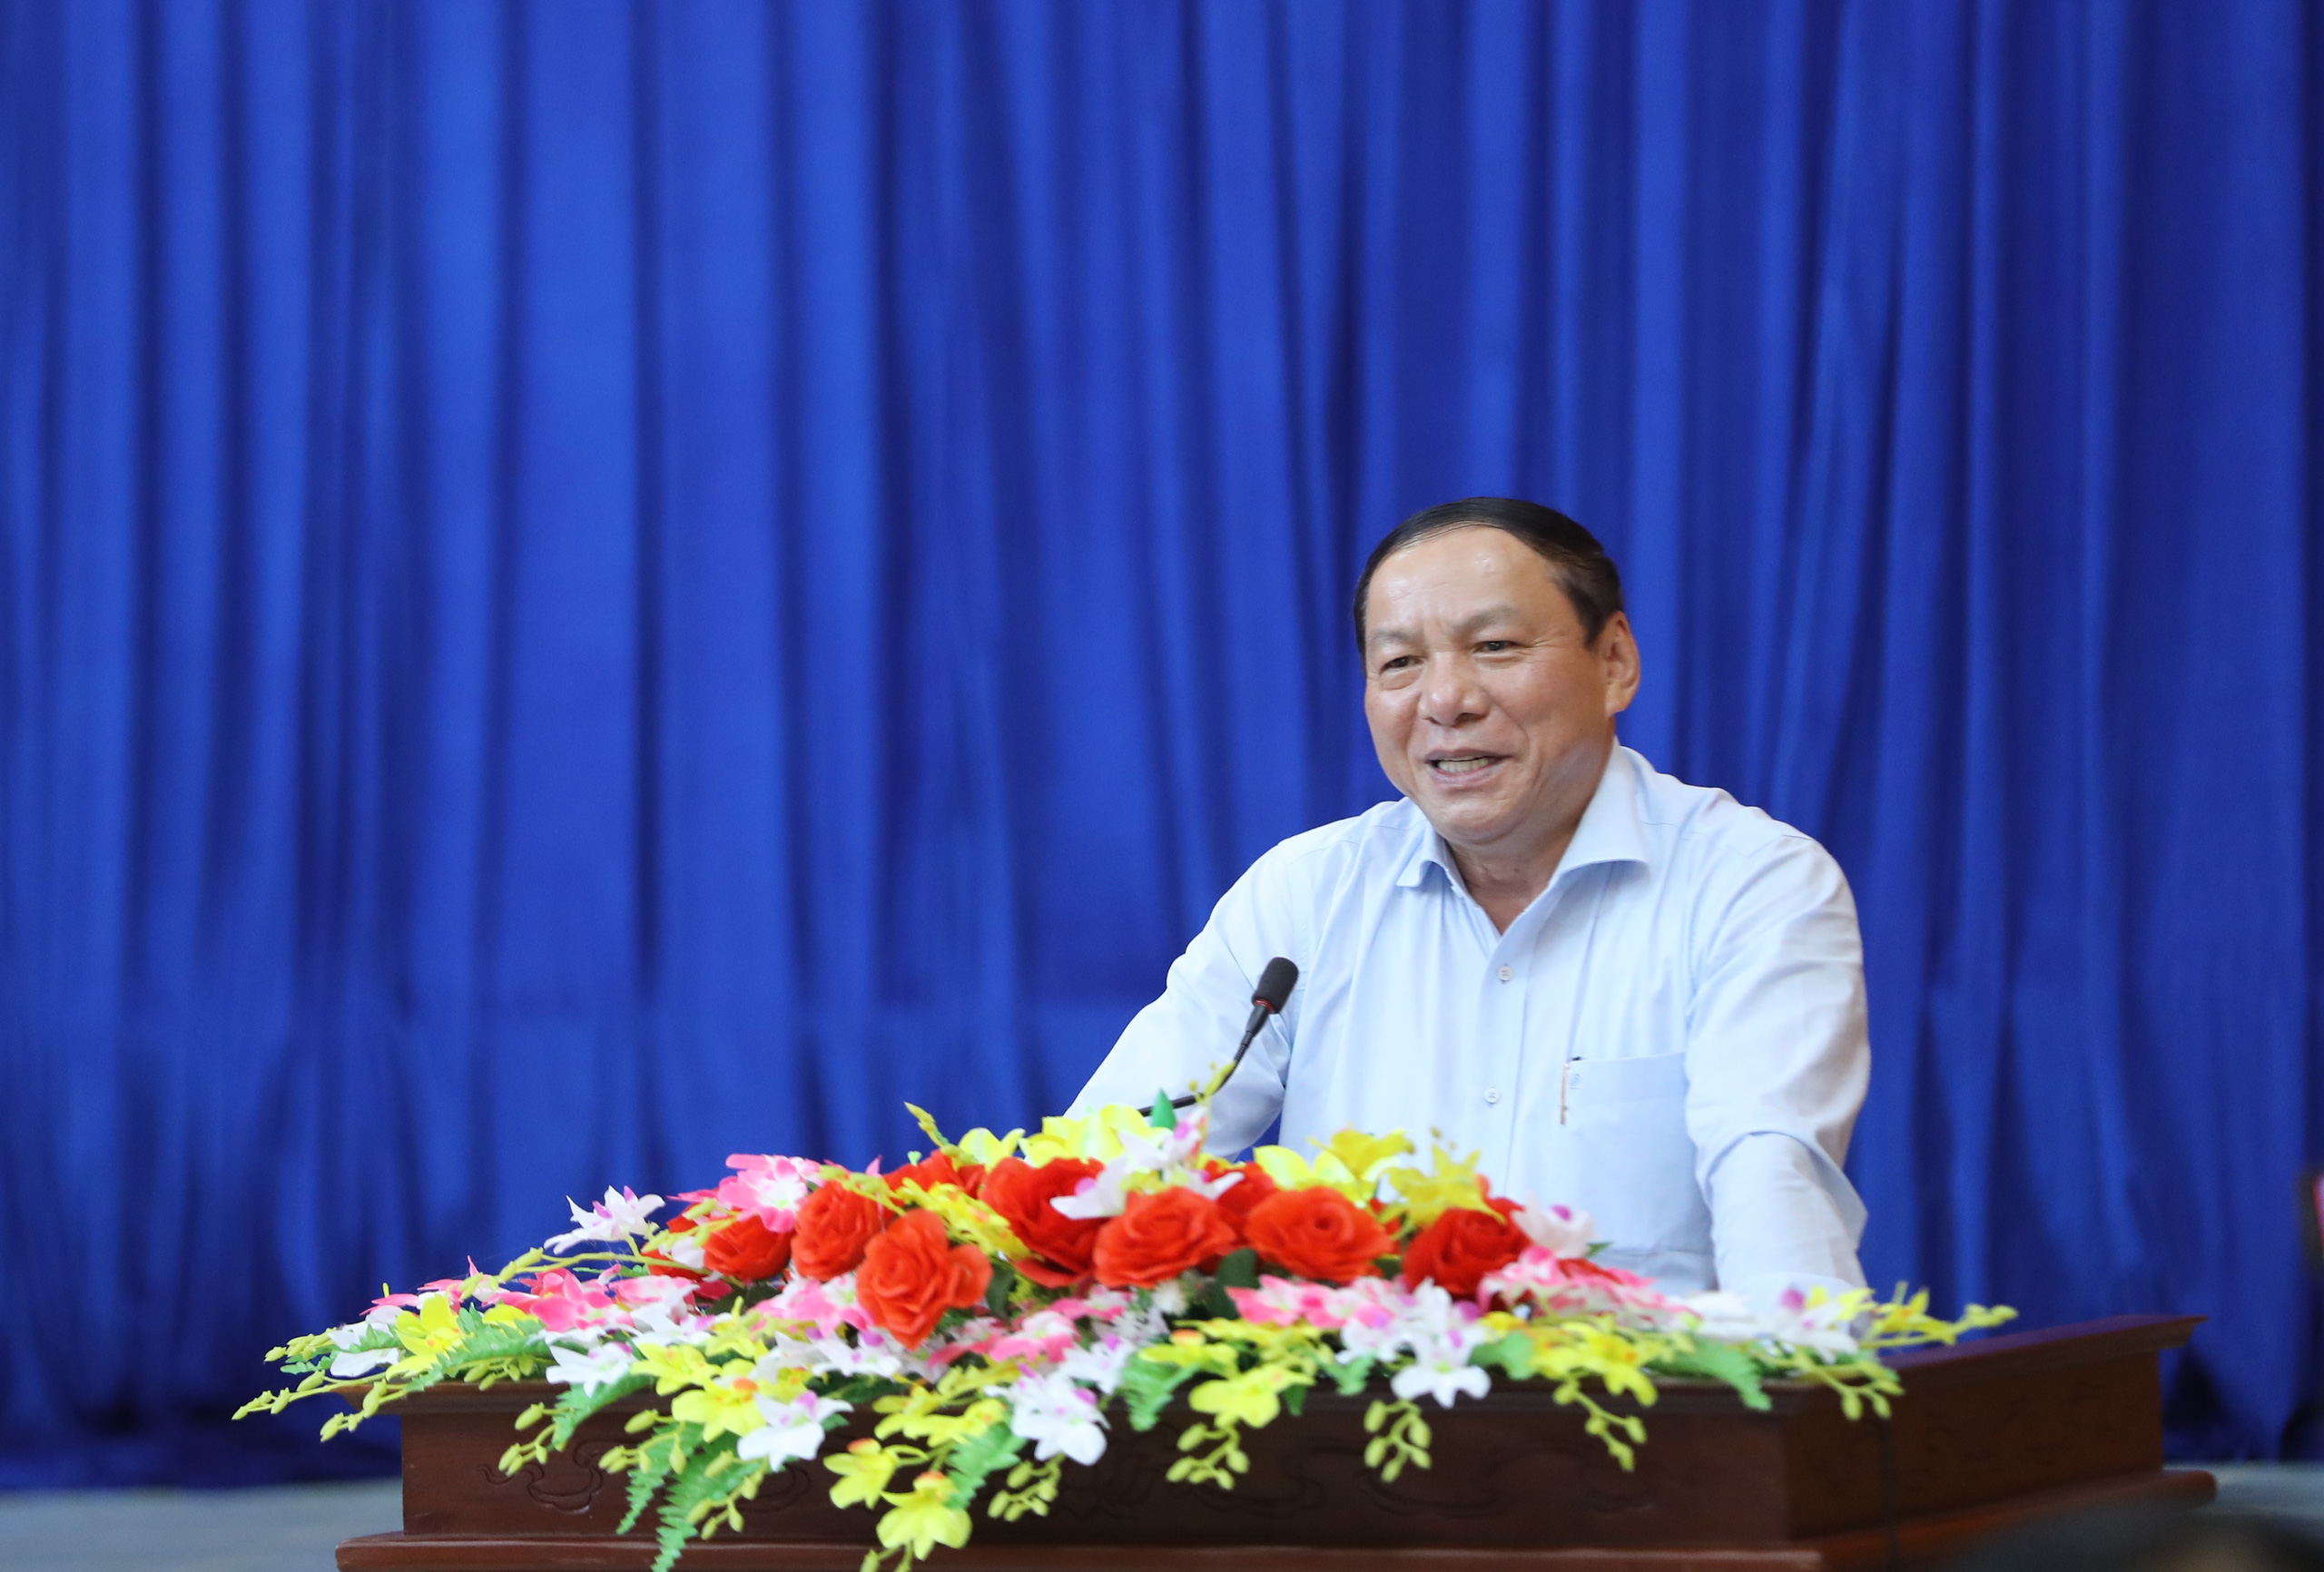 Cử tri tỉnh Kon Tum: Bộ trưởng Nguyễn Văn Hùng đã nói “đúng” và “trúng” những khó khăn, tồn tại của địa phương - Ảnh 1.